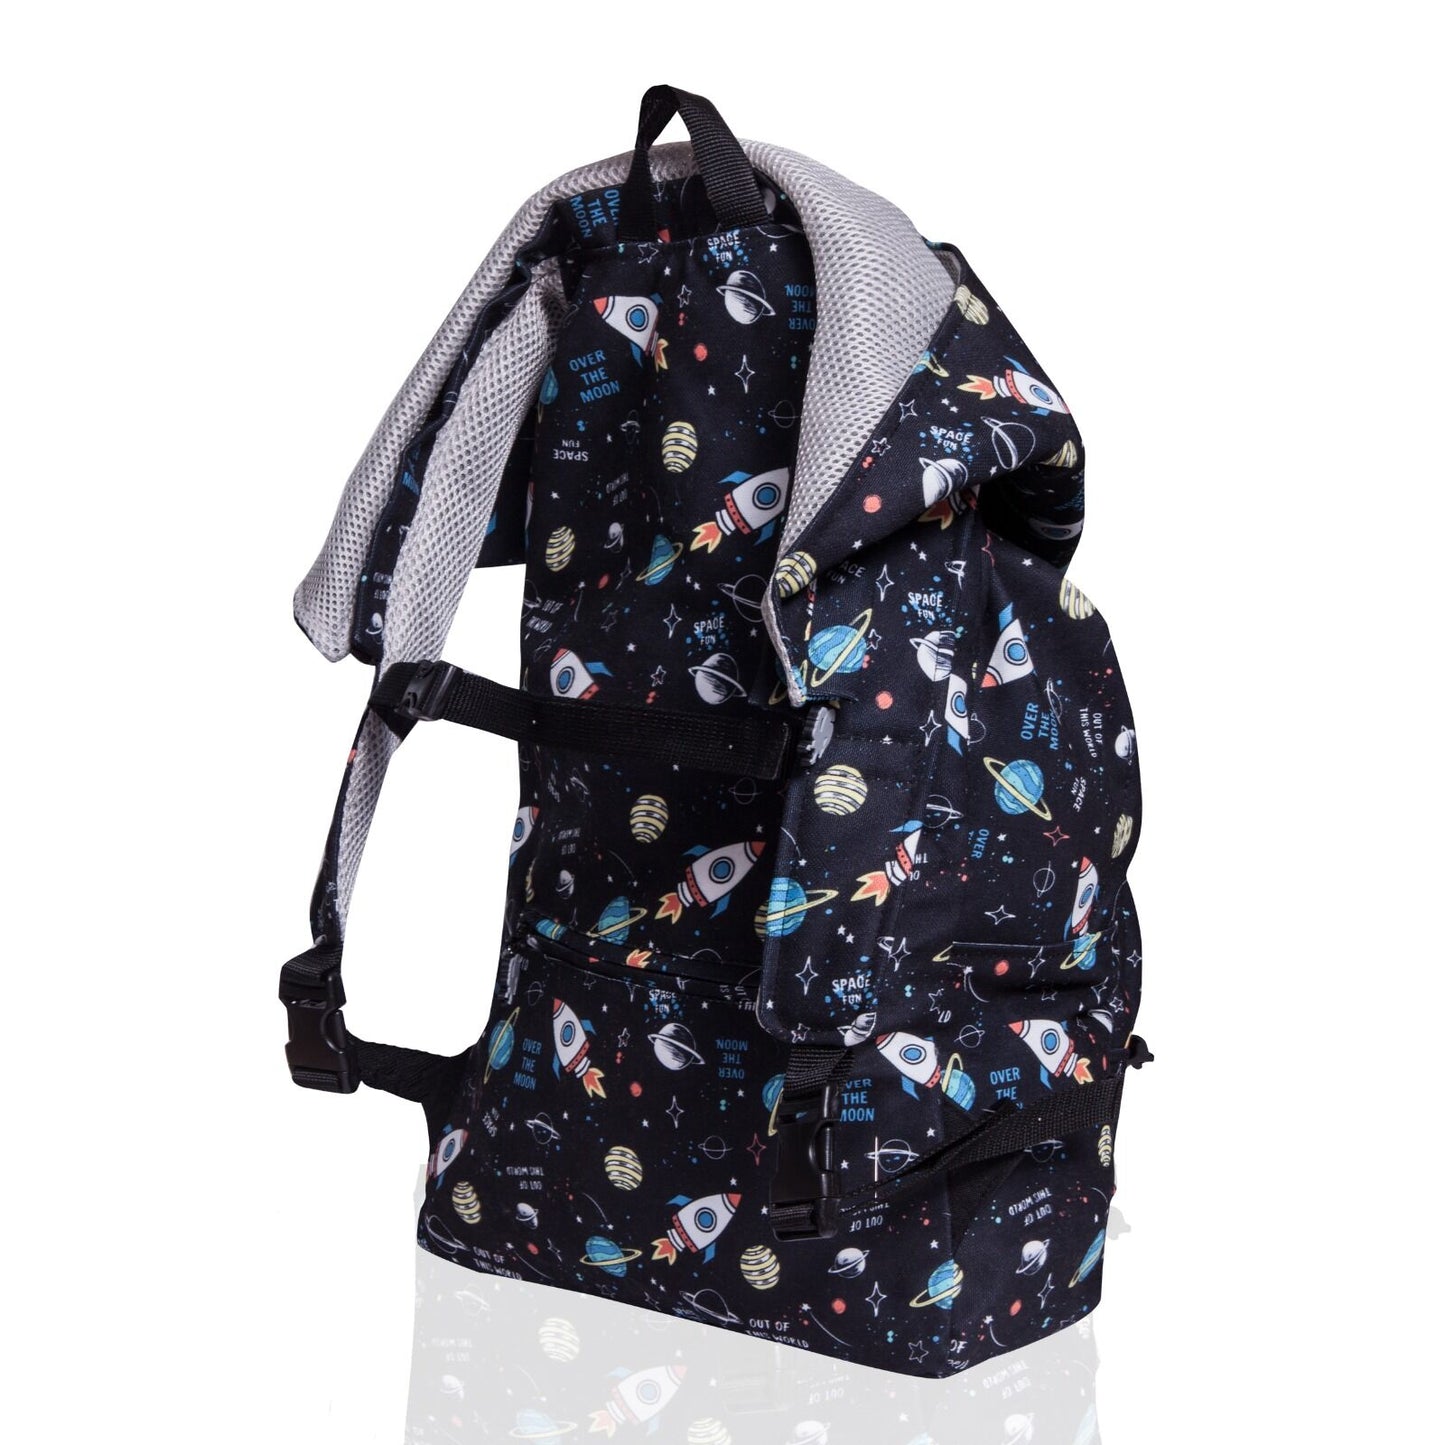 Morikukko Back To School Space Hooded Backpack